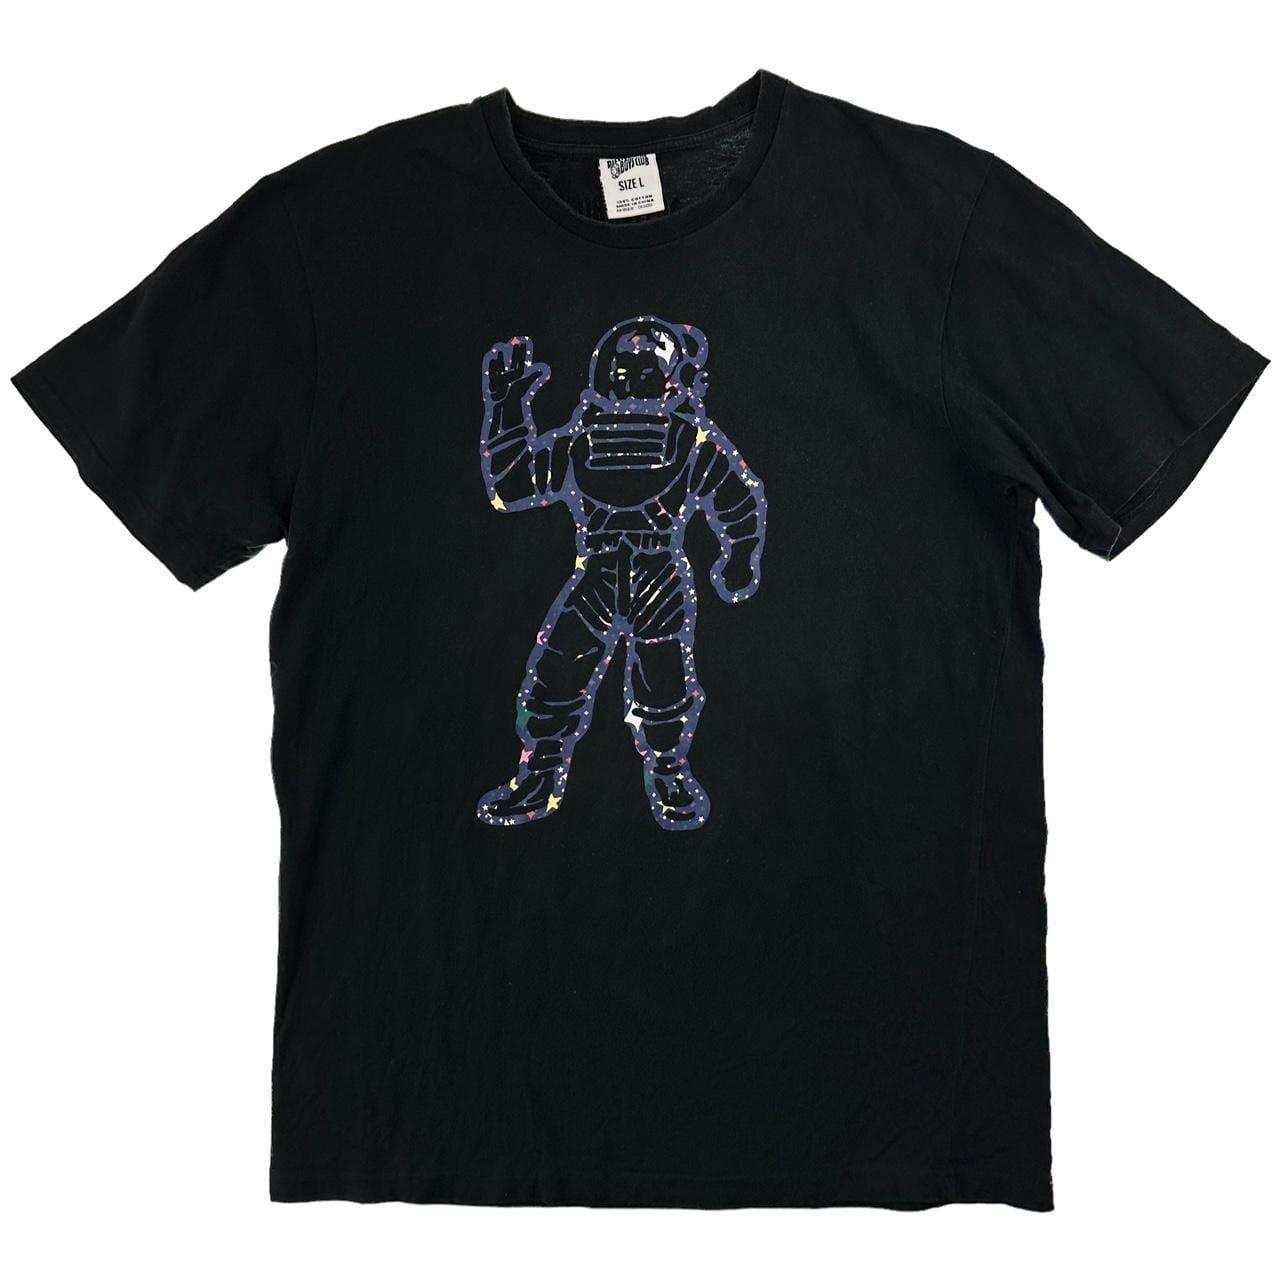 BBC Billionaire Boys Club astronaut t shirt size L - Known Source